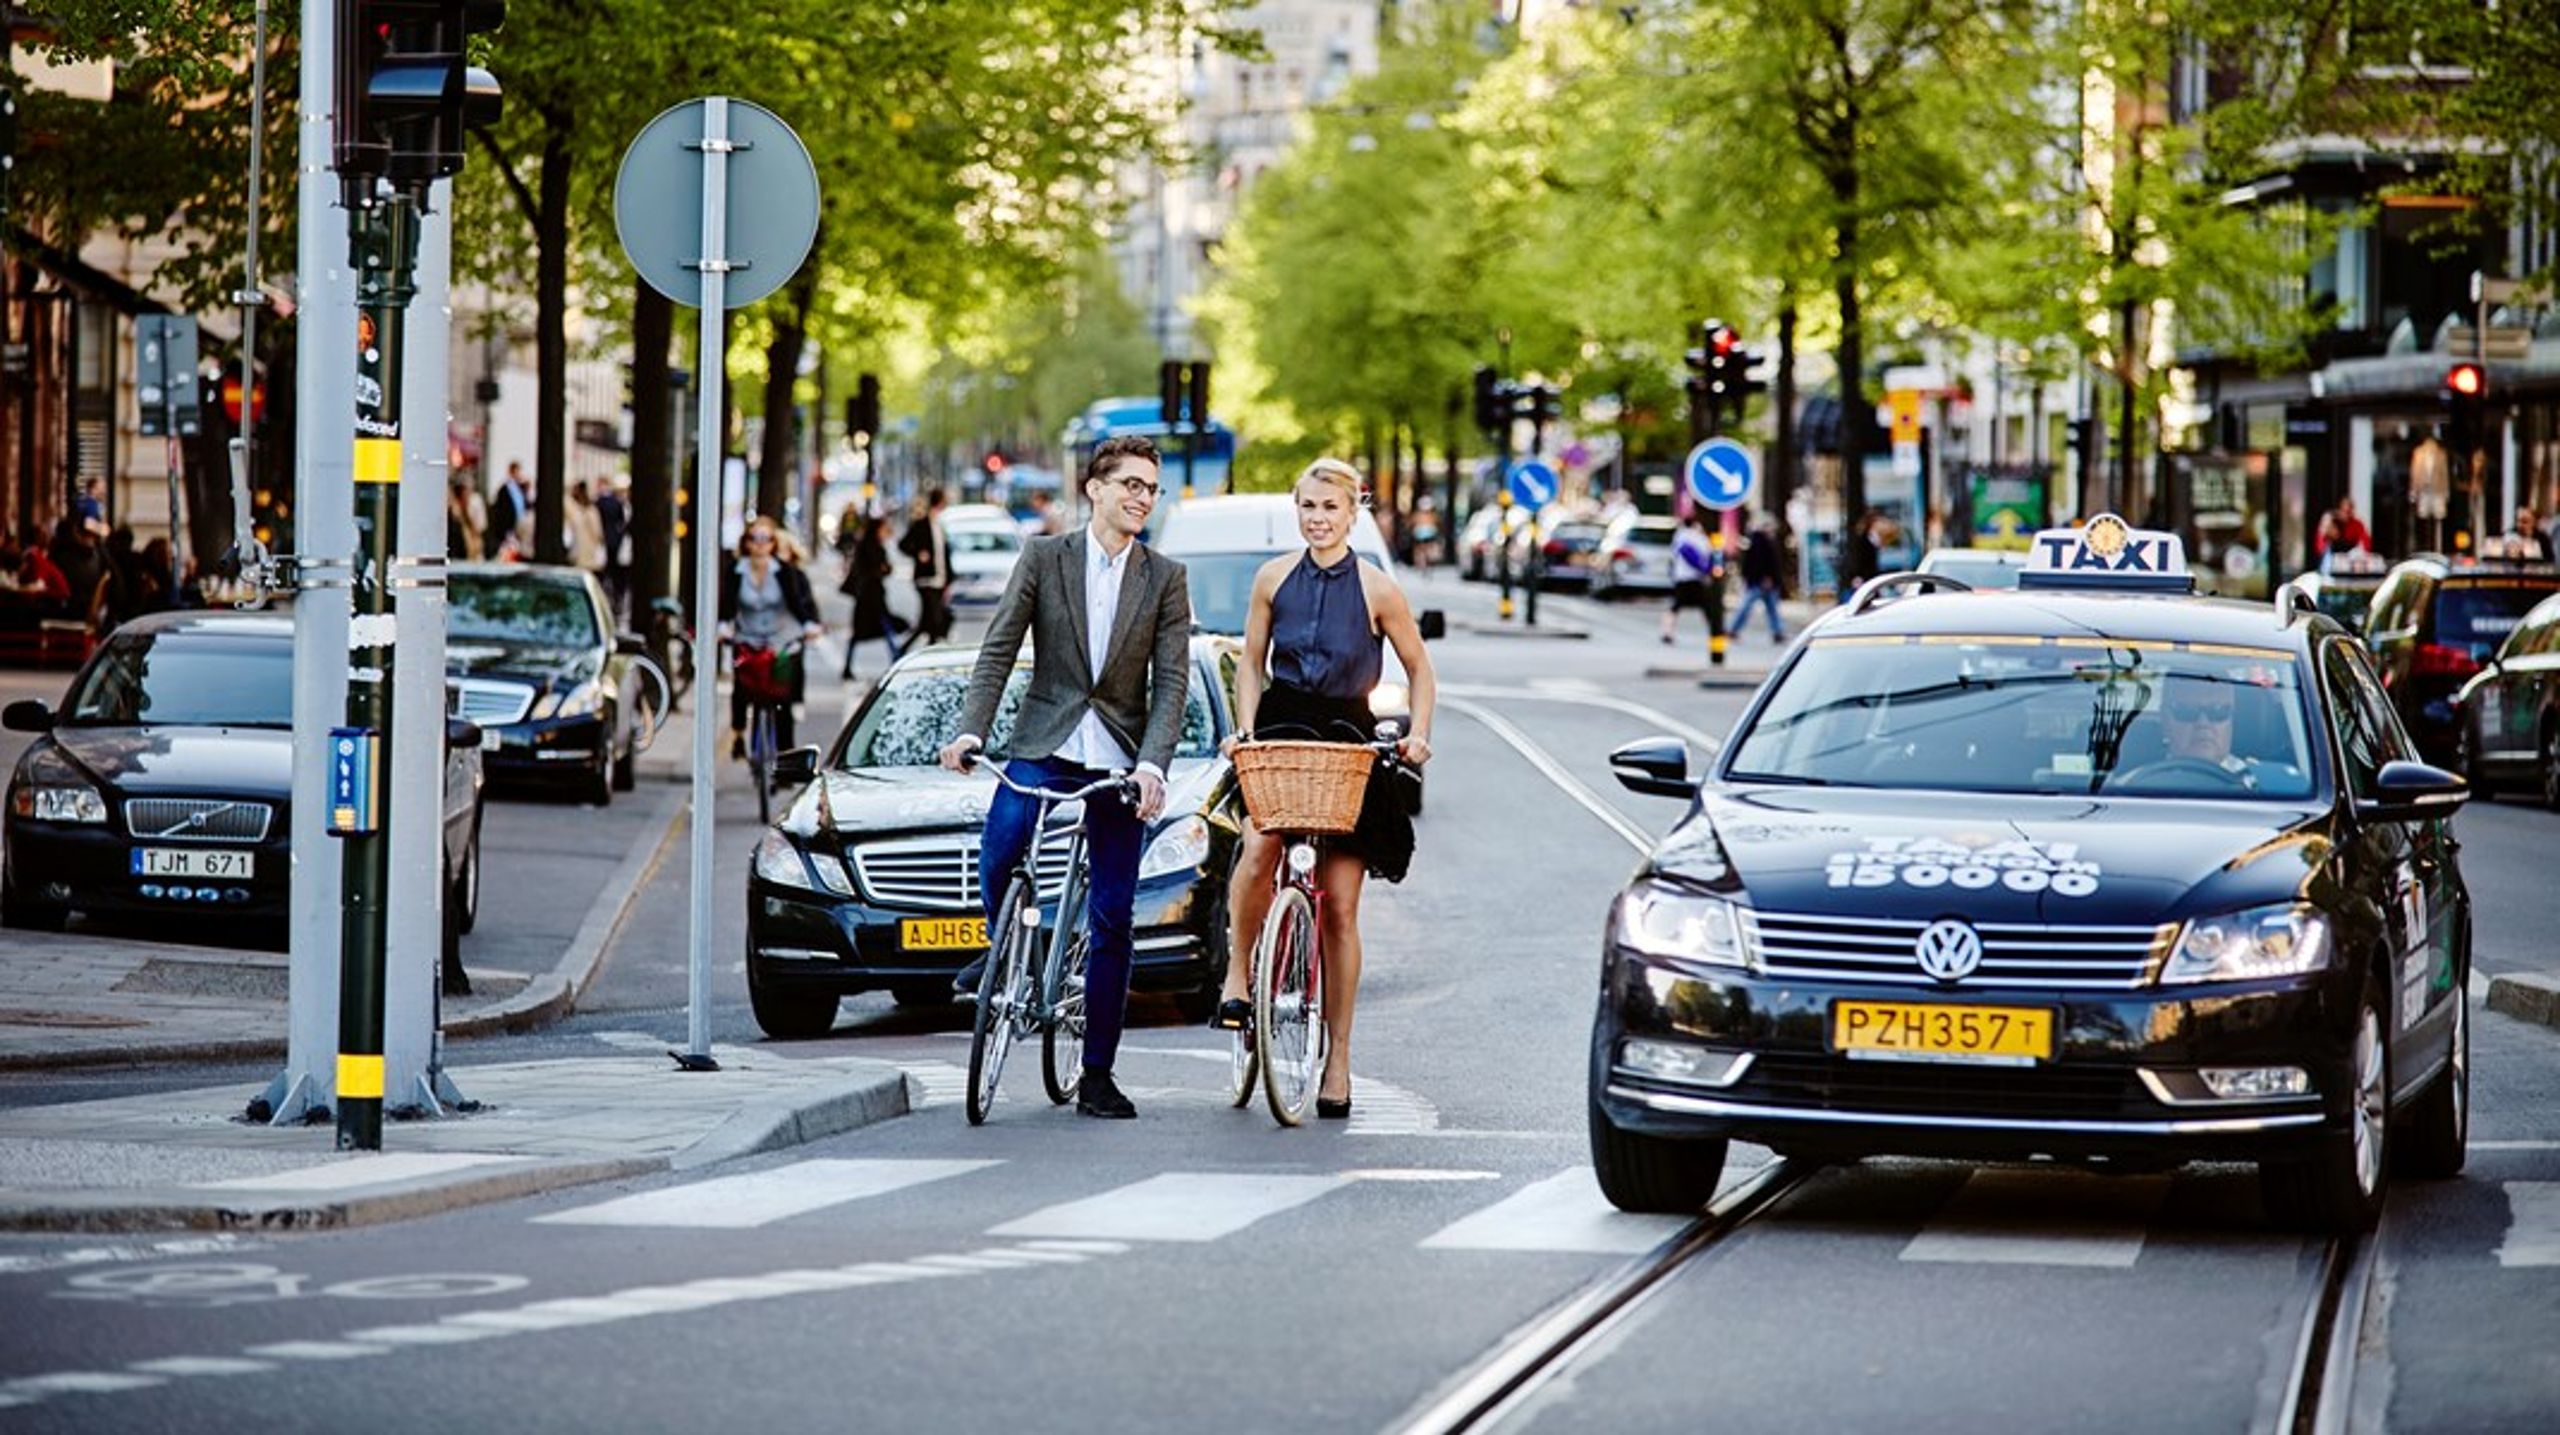 Om allt fler cyklar så minskar transporternas klimatpåverkan, luftkvaliteten och folkhälsan förbättras, och utrymme frigörs i våra städer, skriver debattörerna.